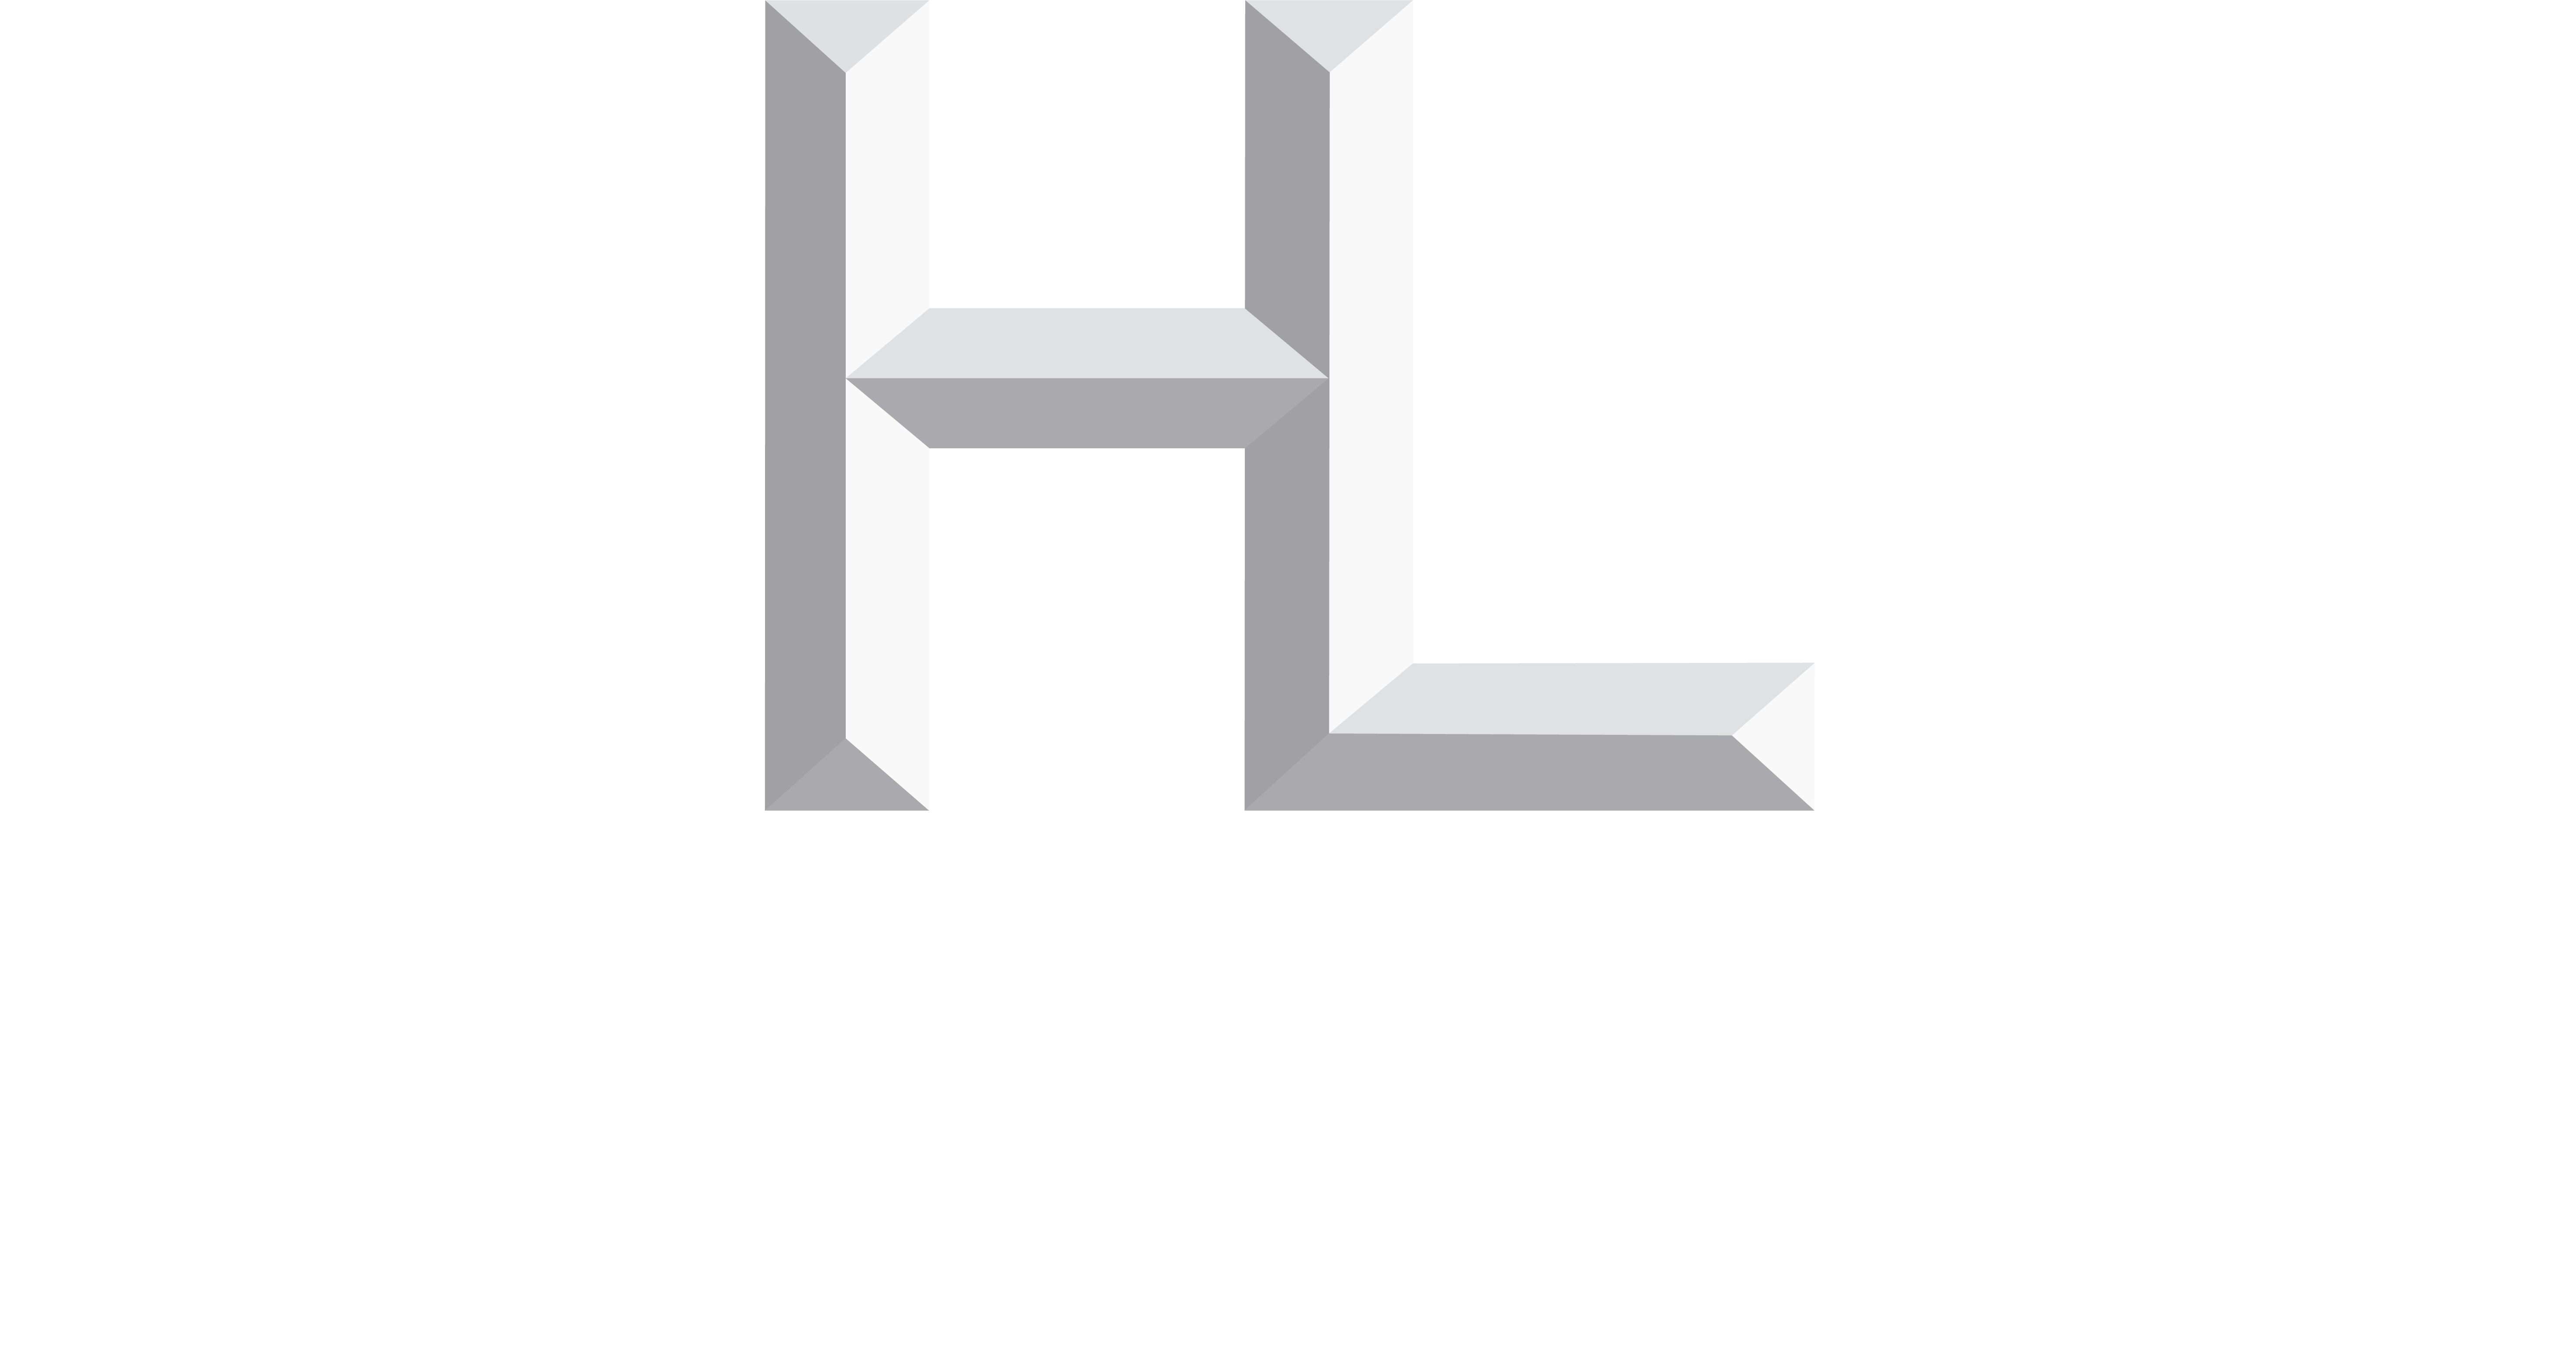 HERILL